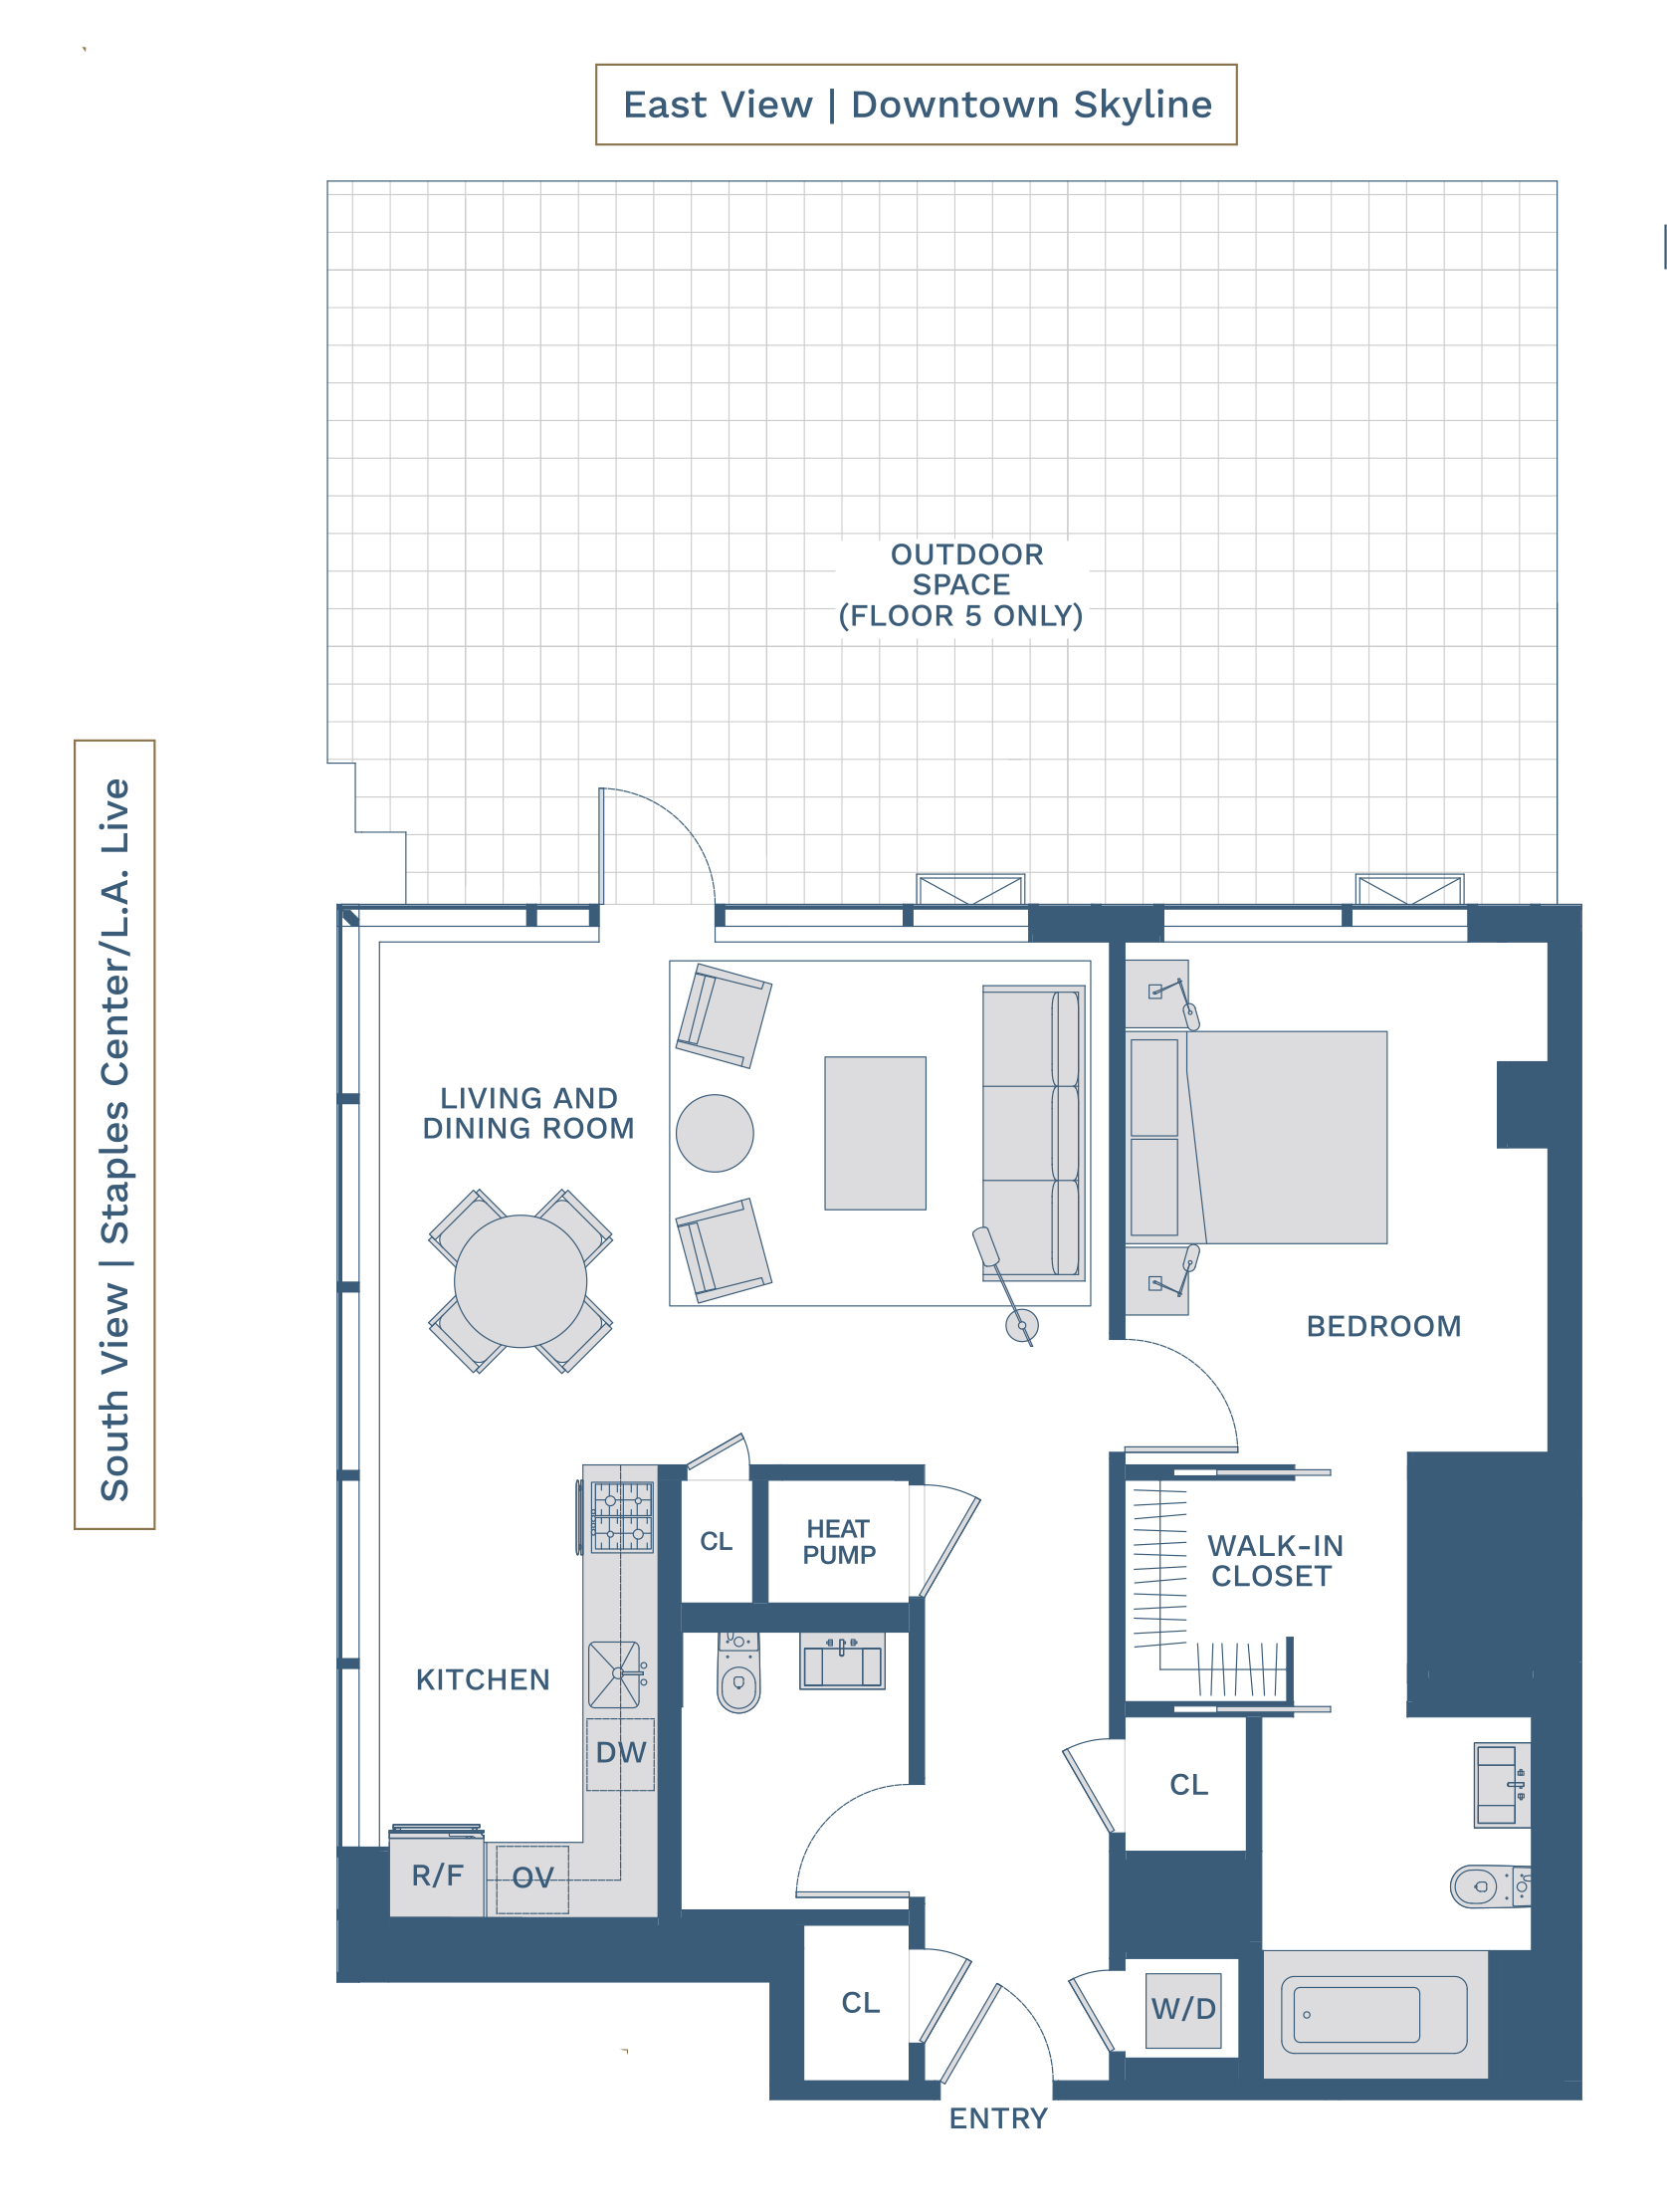 R2 FL5 19 Floorplan 28